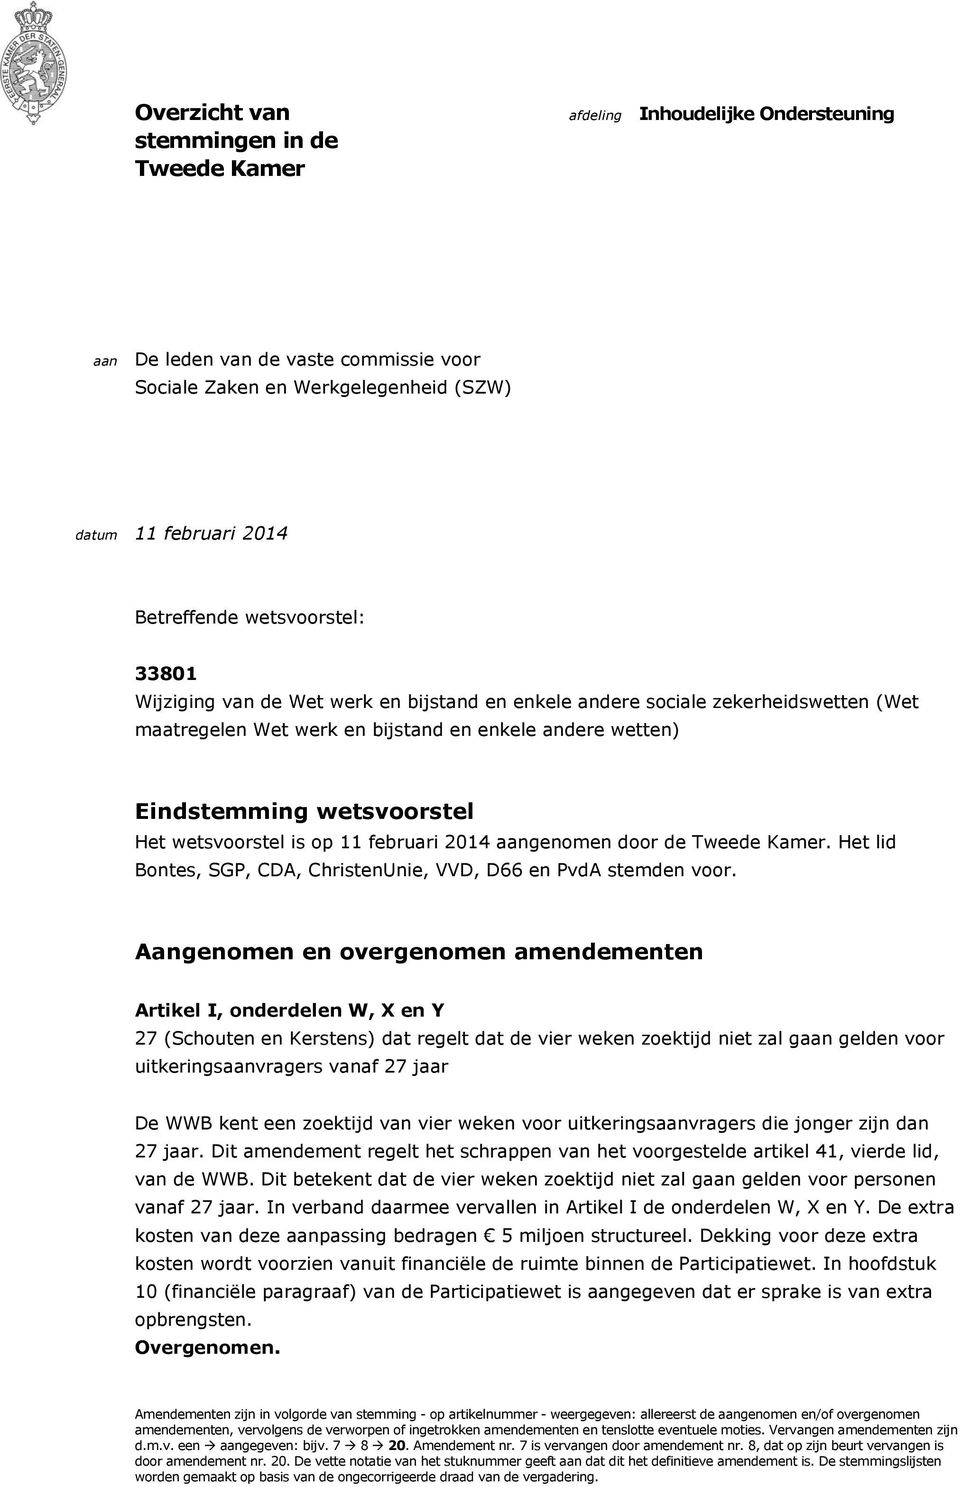 wetsvoorstel is op 11 februari 2014 aangenomen door de Tweede Kamer. Het lid Bontes, SGP, CDA, ChristenUnie, VVD, D66 en PvdA stemden voor.